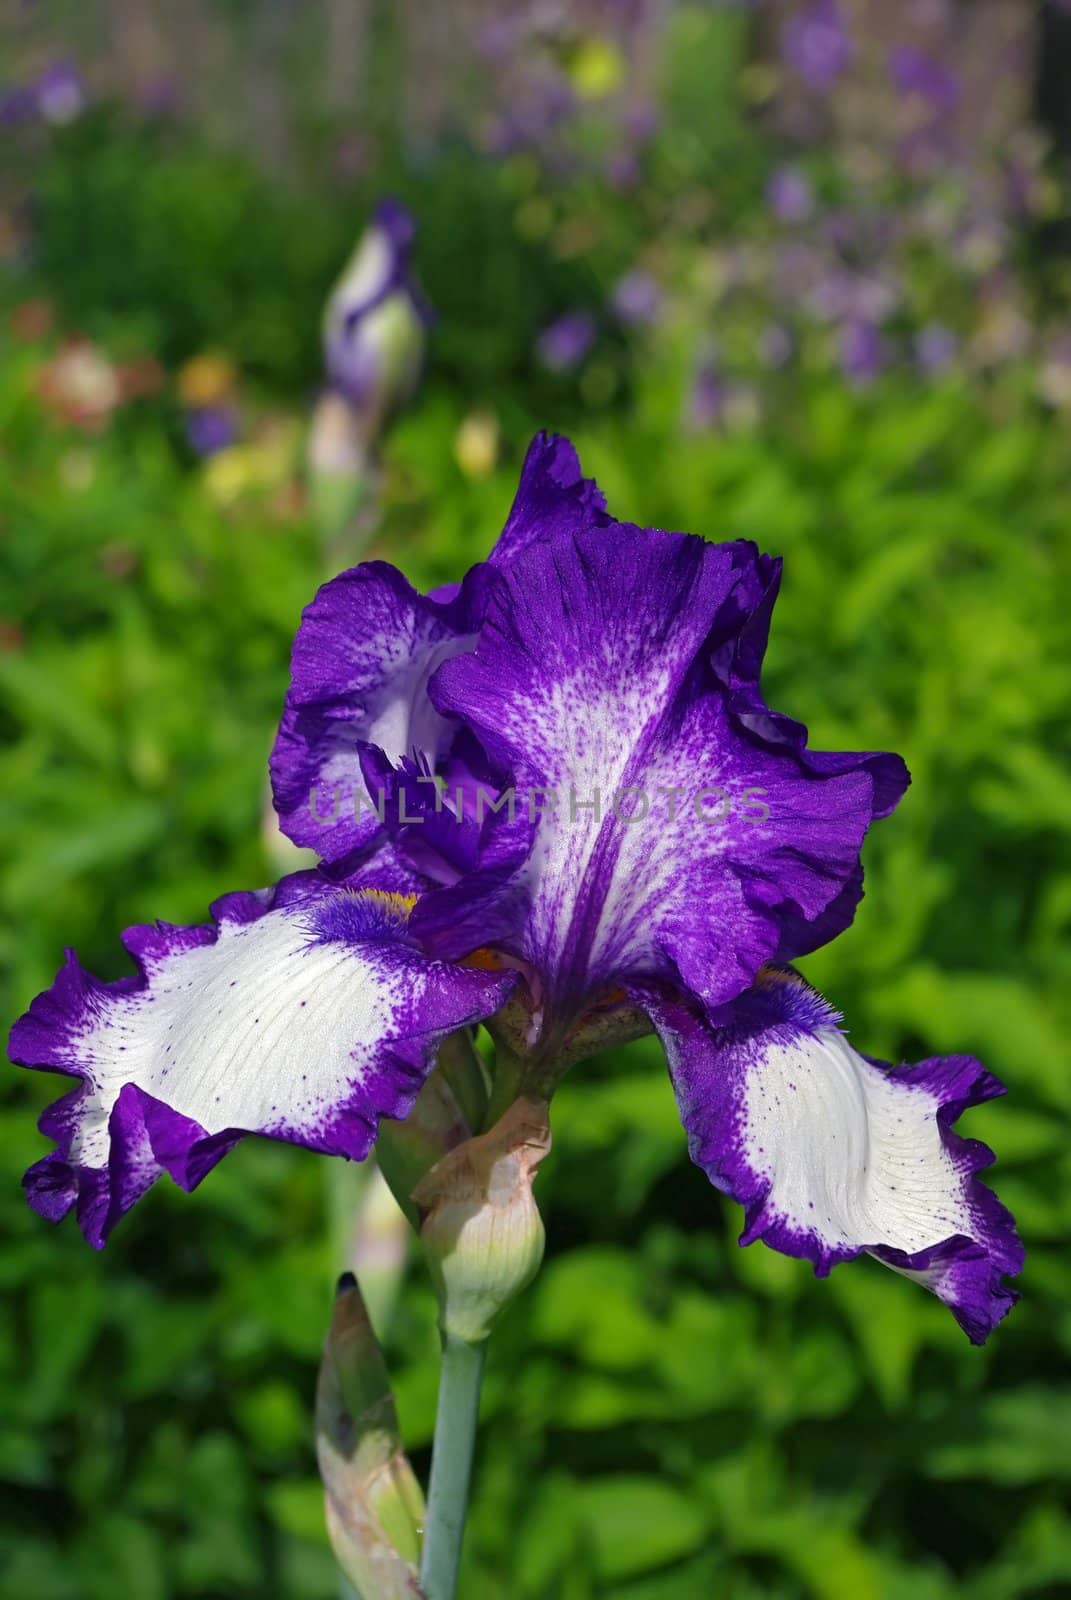 Purple Iris flower in bloom by Vitamin